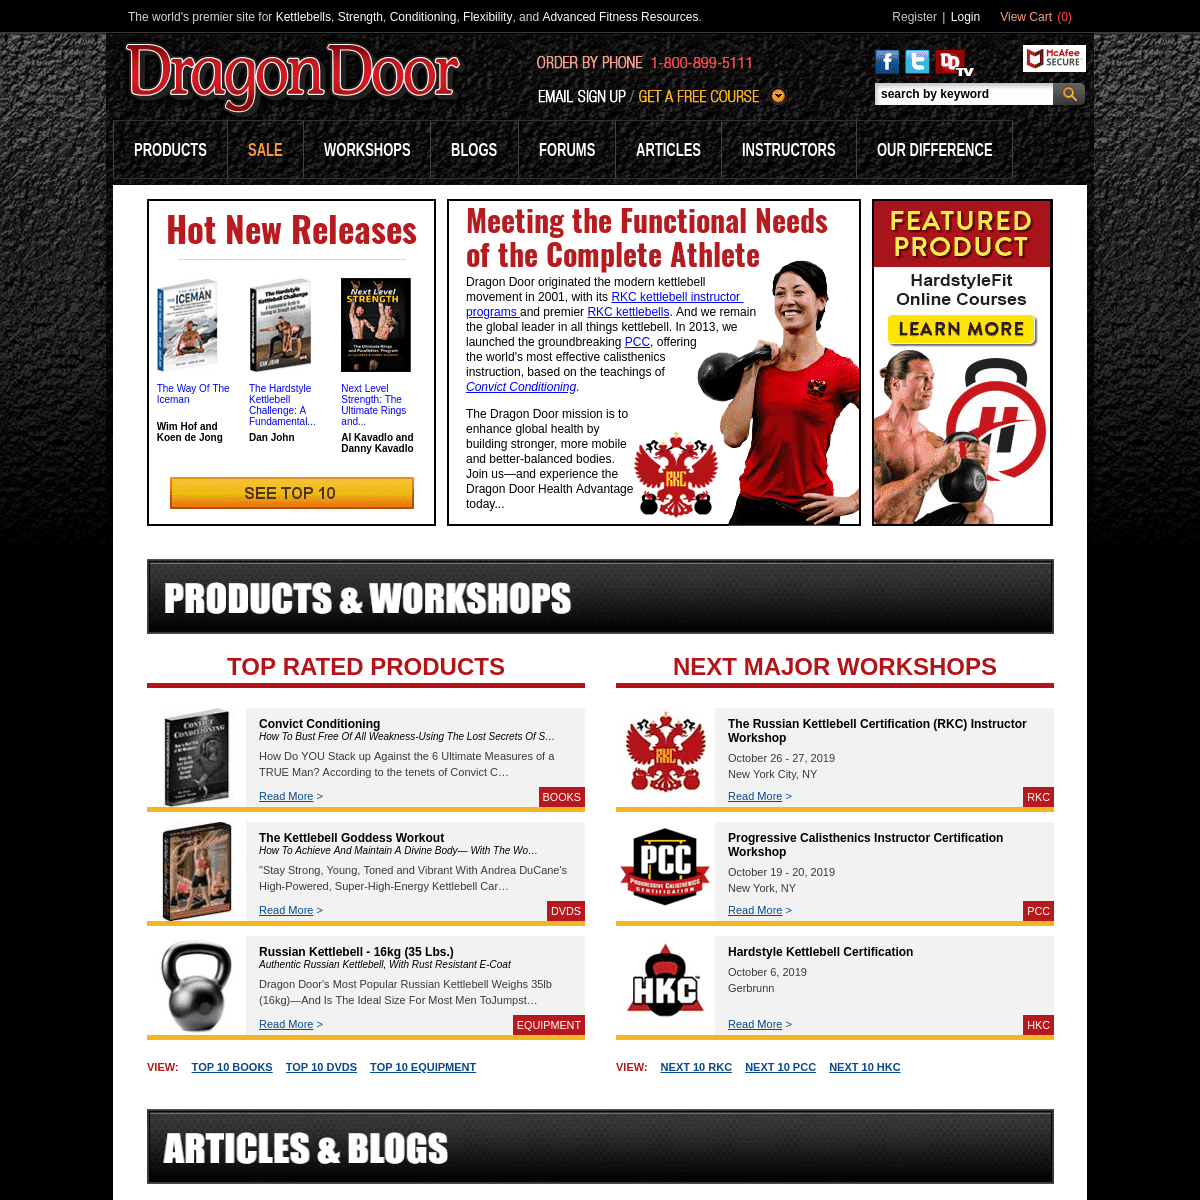 A complete backup of dragondoor.com